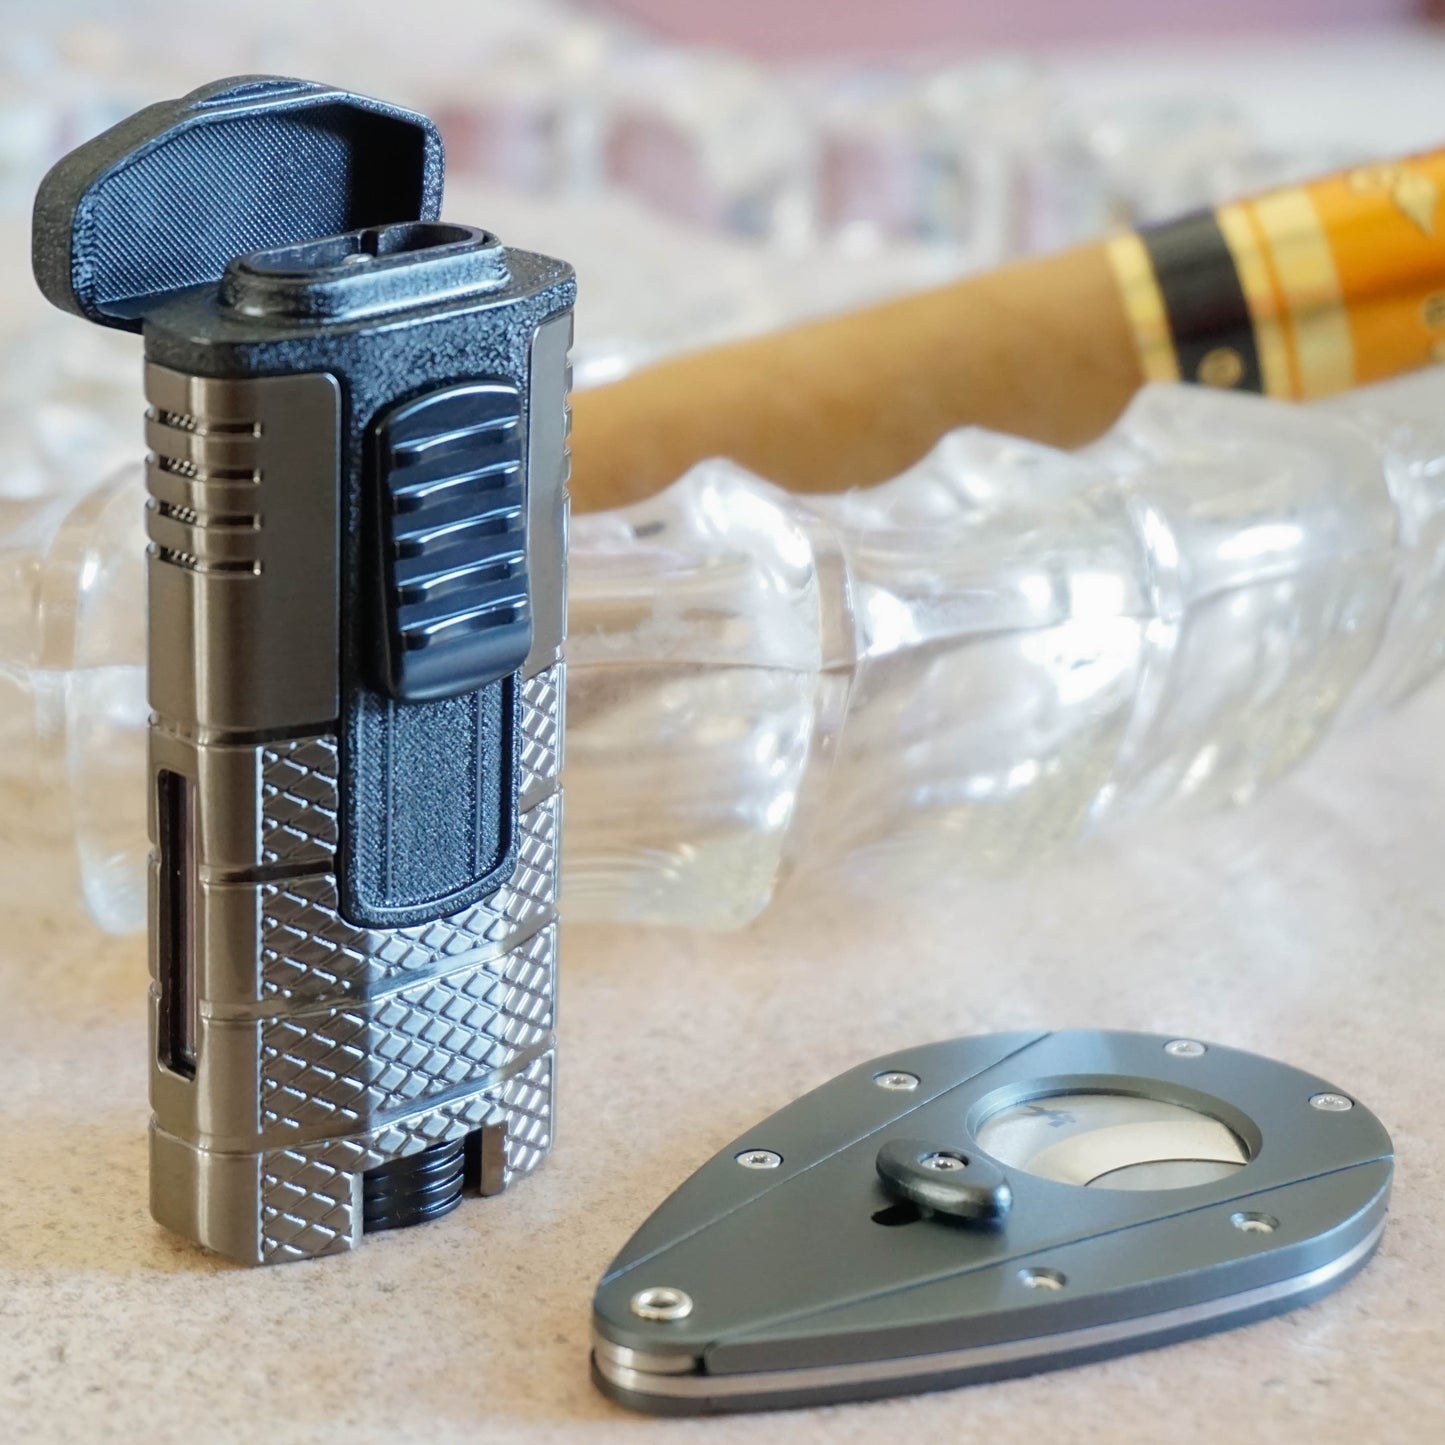 Xikar Tactical Bundle Pack - Combo de Titanio - Estuche para puros y encendedor de antorcha